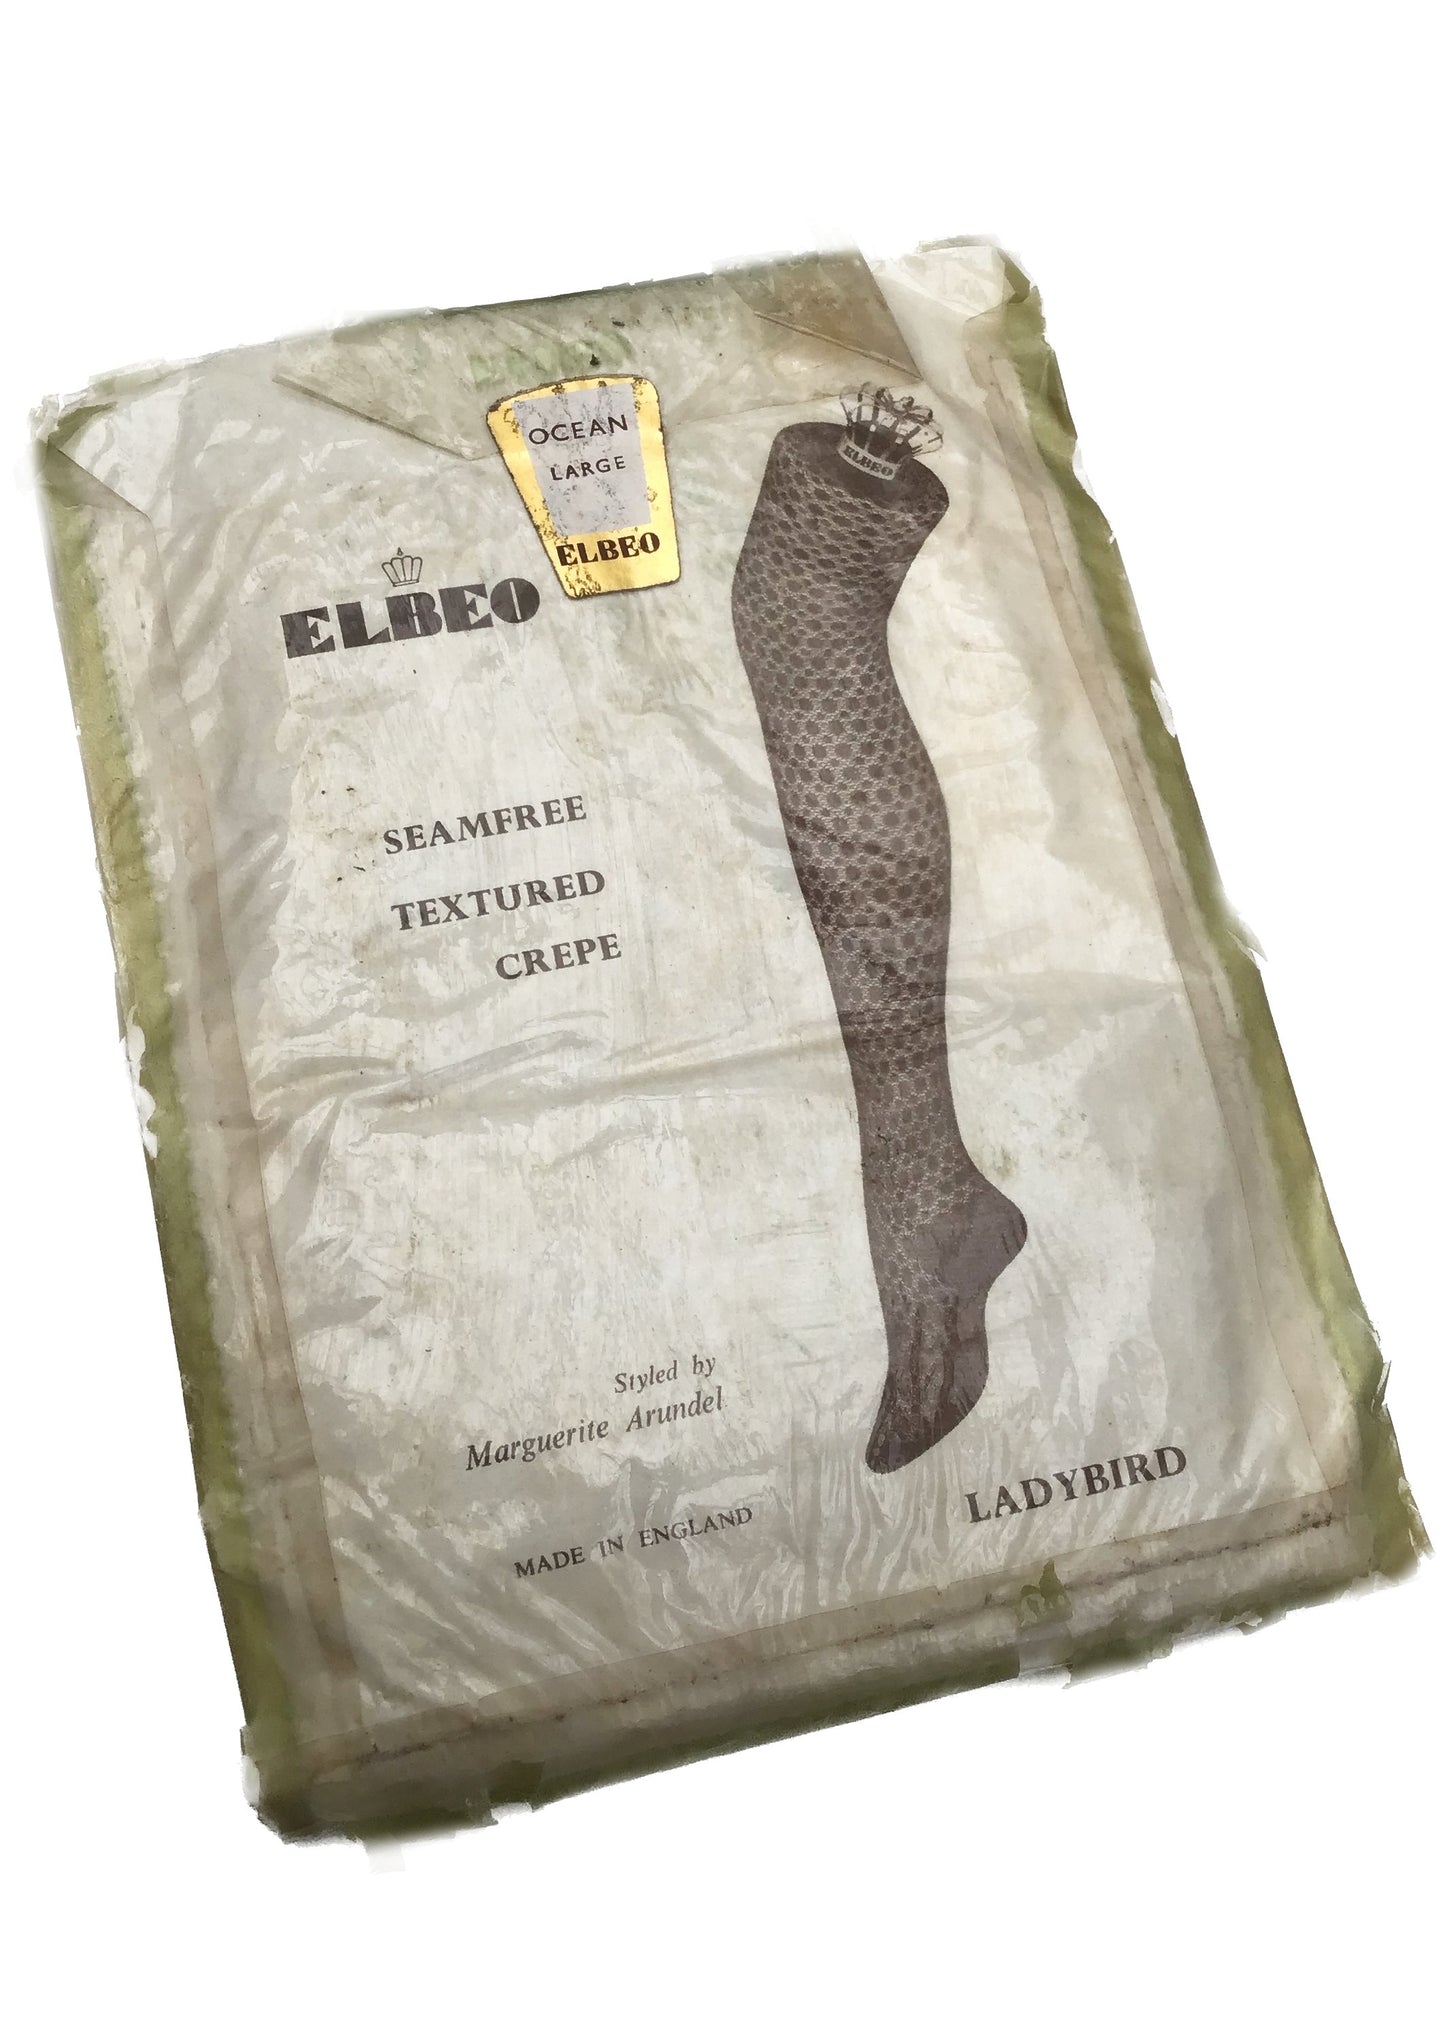 Original Vintage Elbeo Ocean Blue Lace Stockings